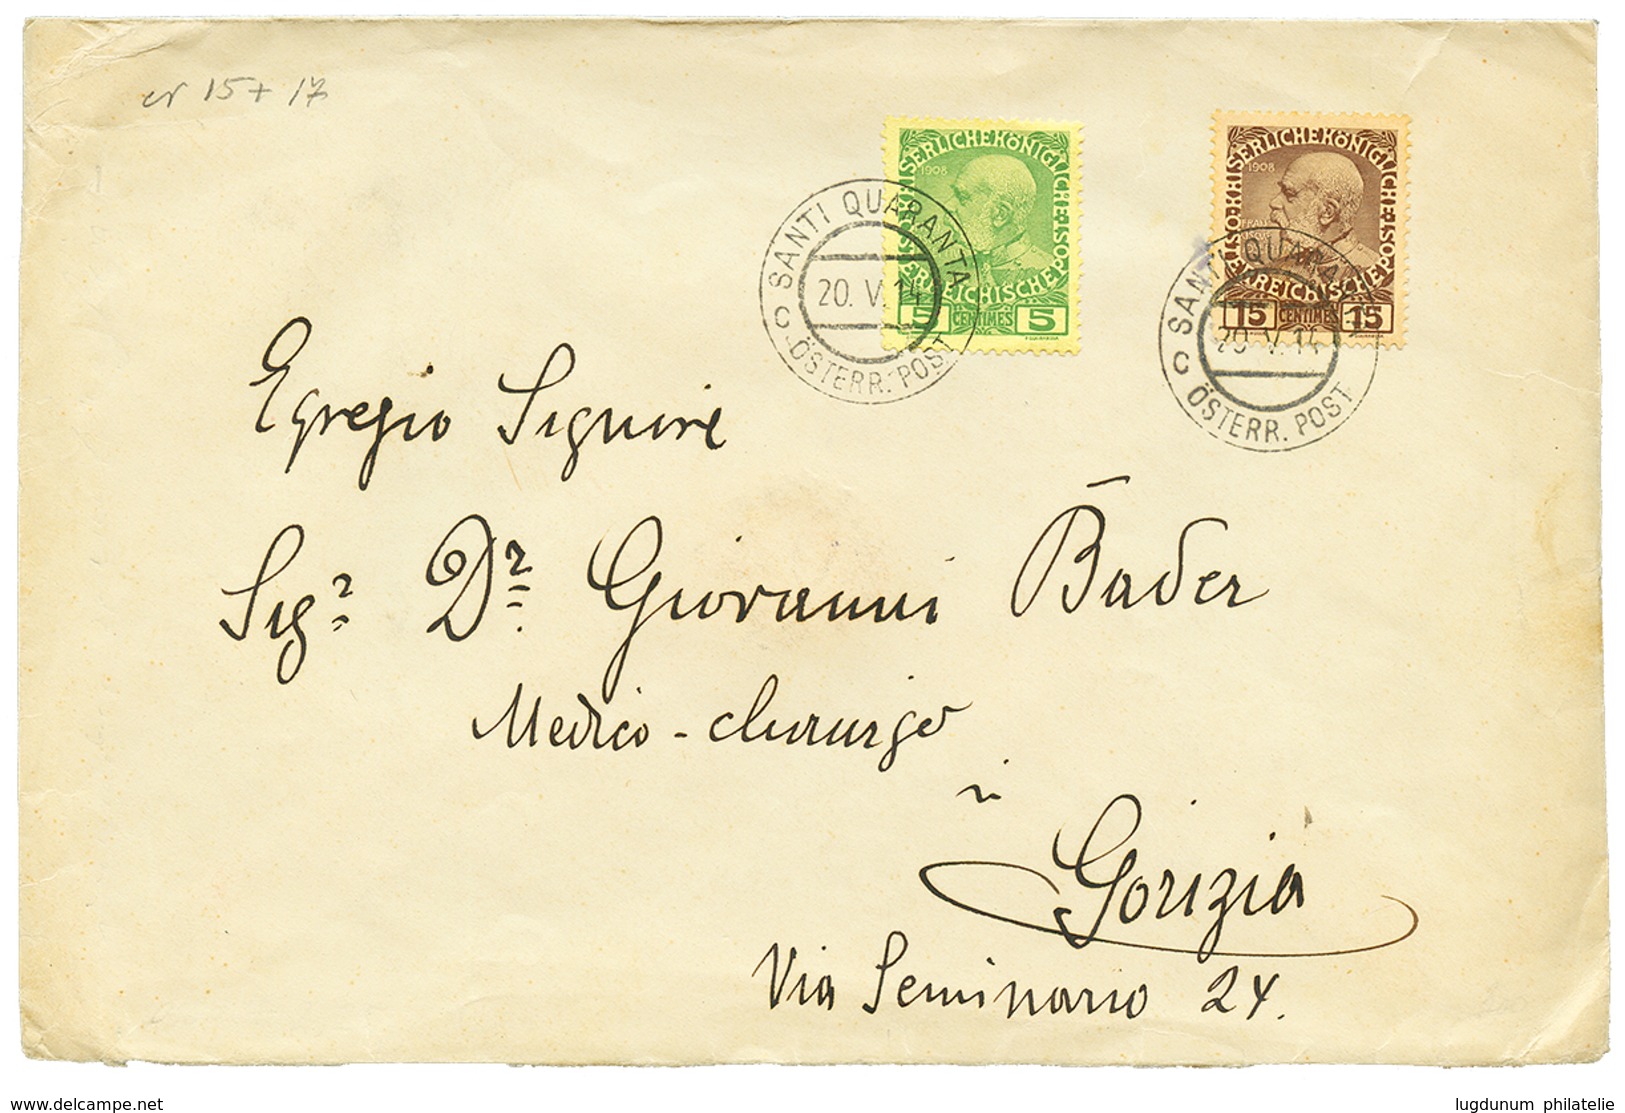 501 "SANTI QUARANTA" : 1914 5c + 15c Canc. SANTI QUARANTA On Envelope To GORIZIA. RARE. Superb. - Eastern Austria